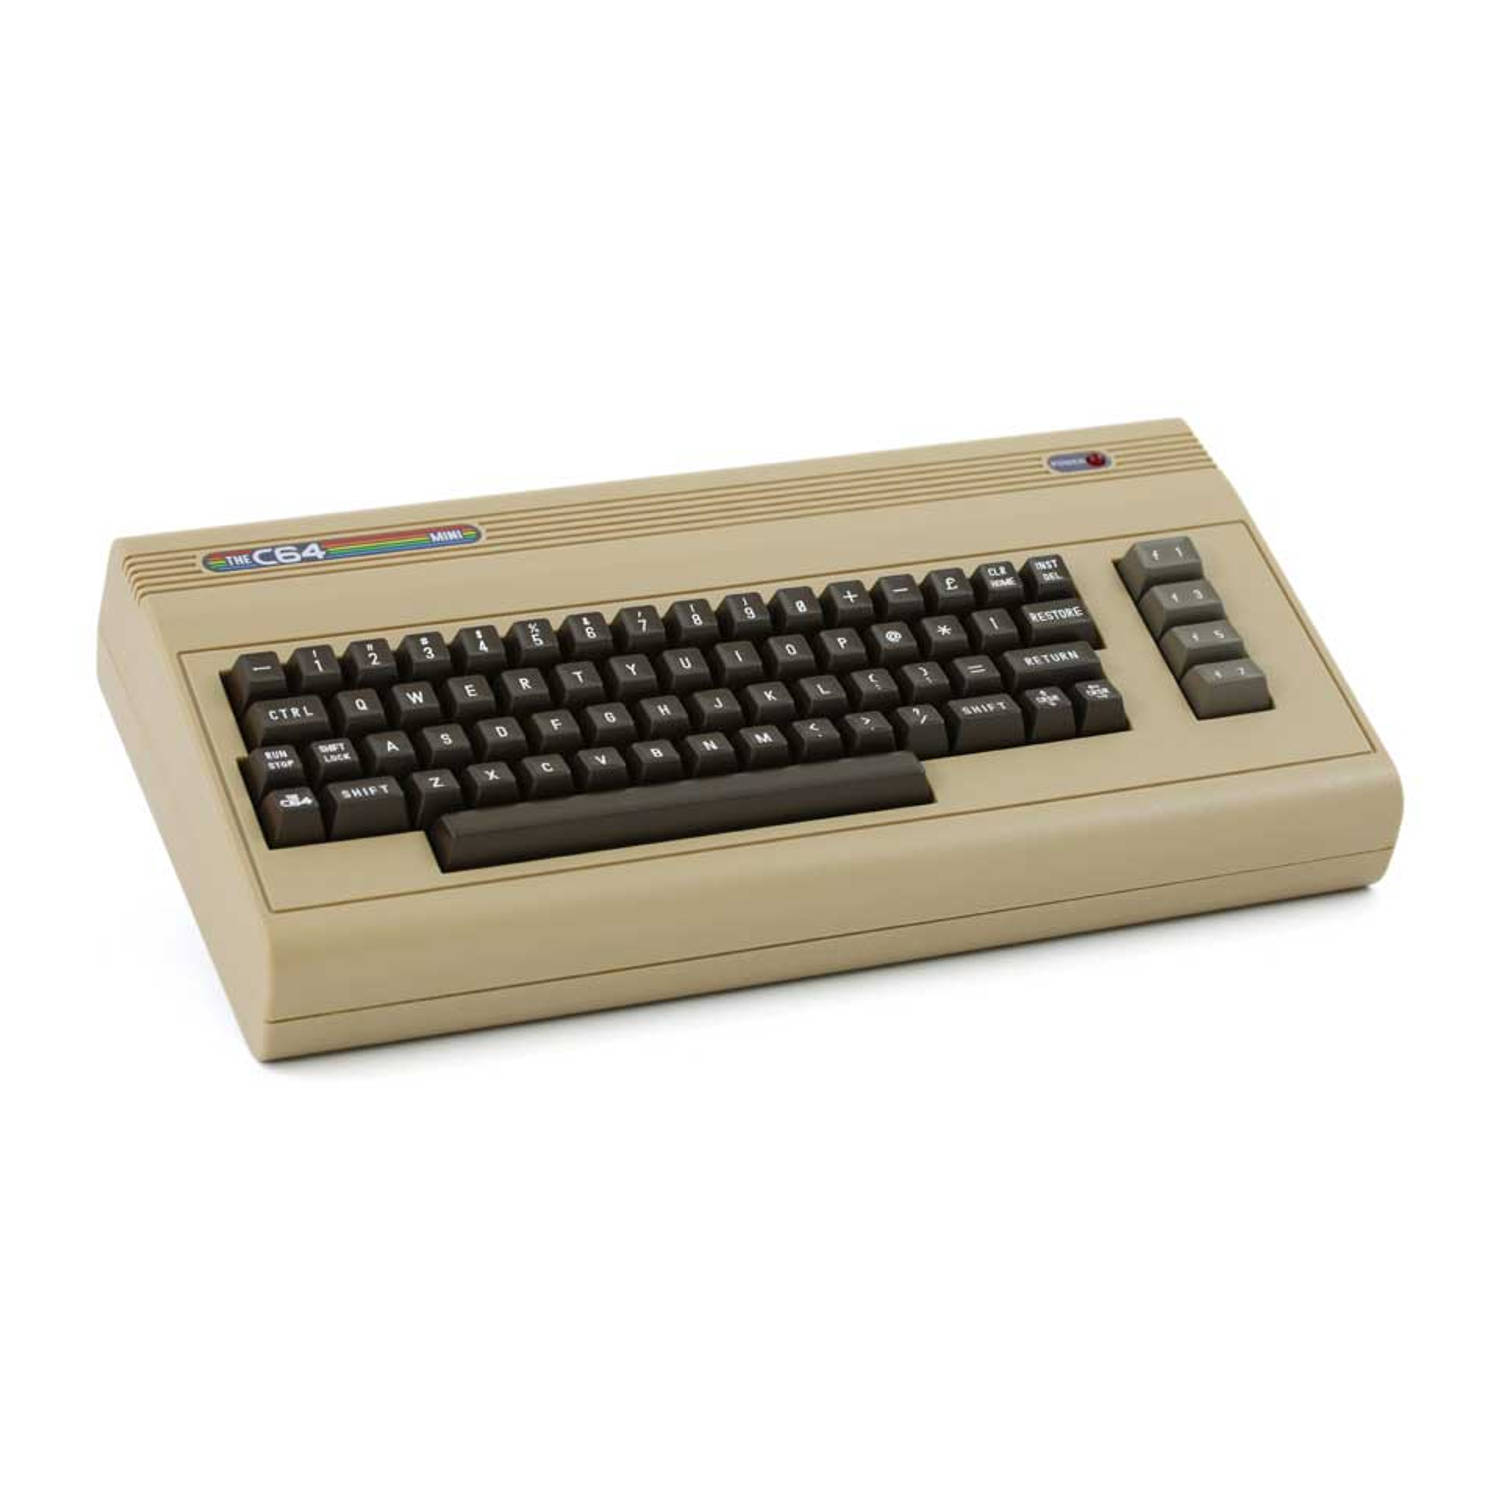 Commodore 64 replica